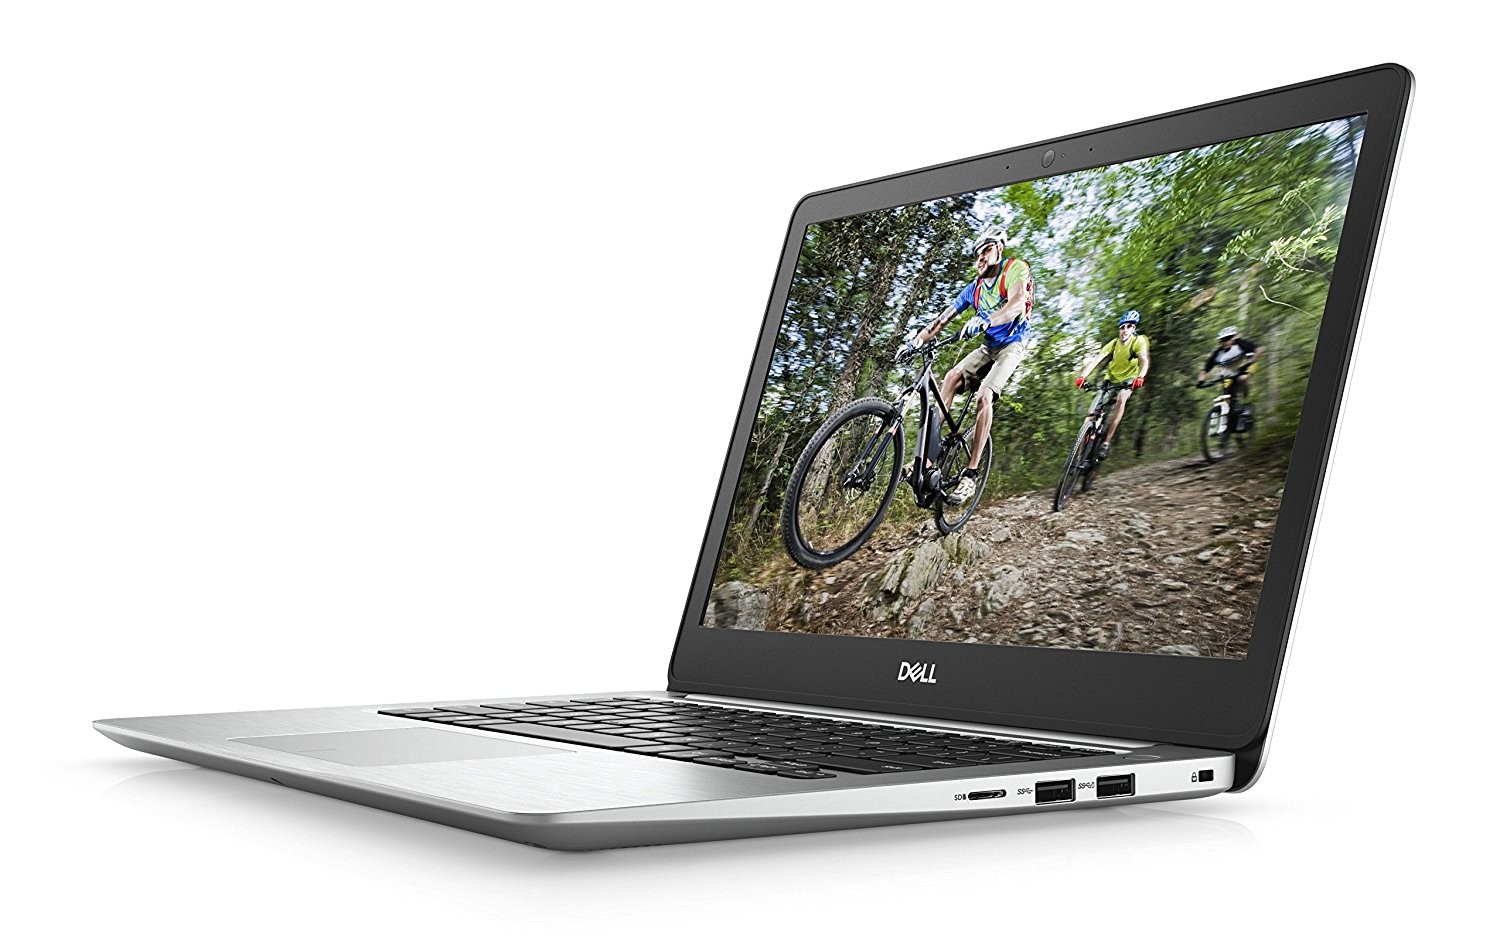 Dell Inspiron 13 5000  FHD Laptop, i5-8250U, 8GB RAM, 256GB SSD,  W10